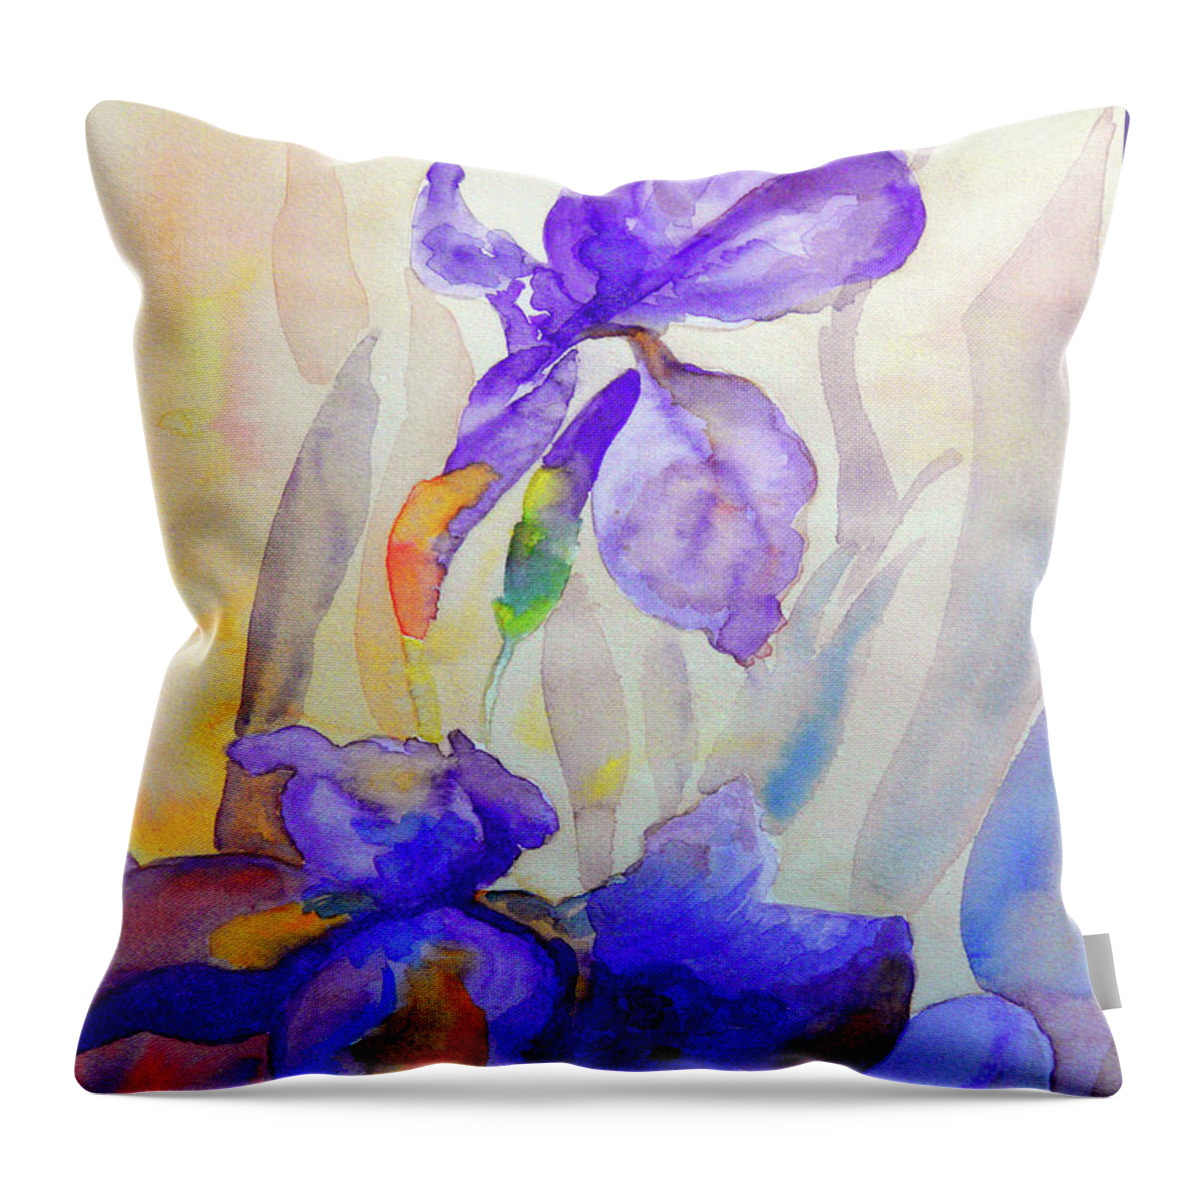 Beautiful Iris Throw Pillow featuring the painting Iris by Jasna Dragun